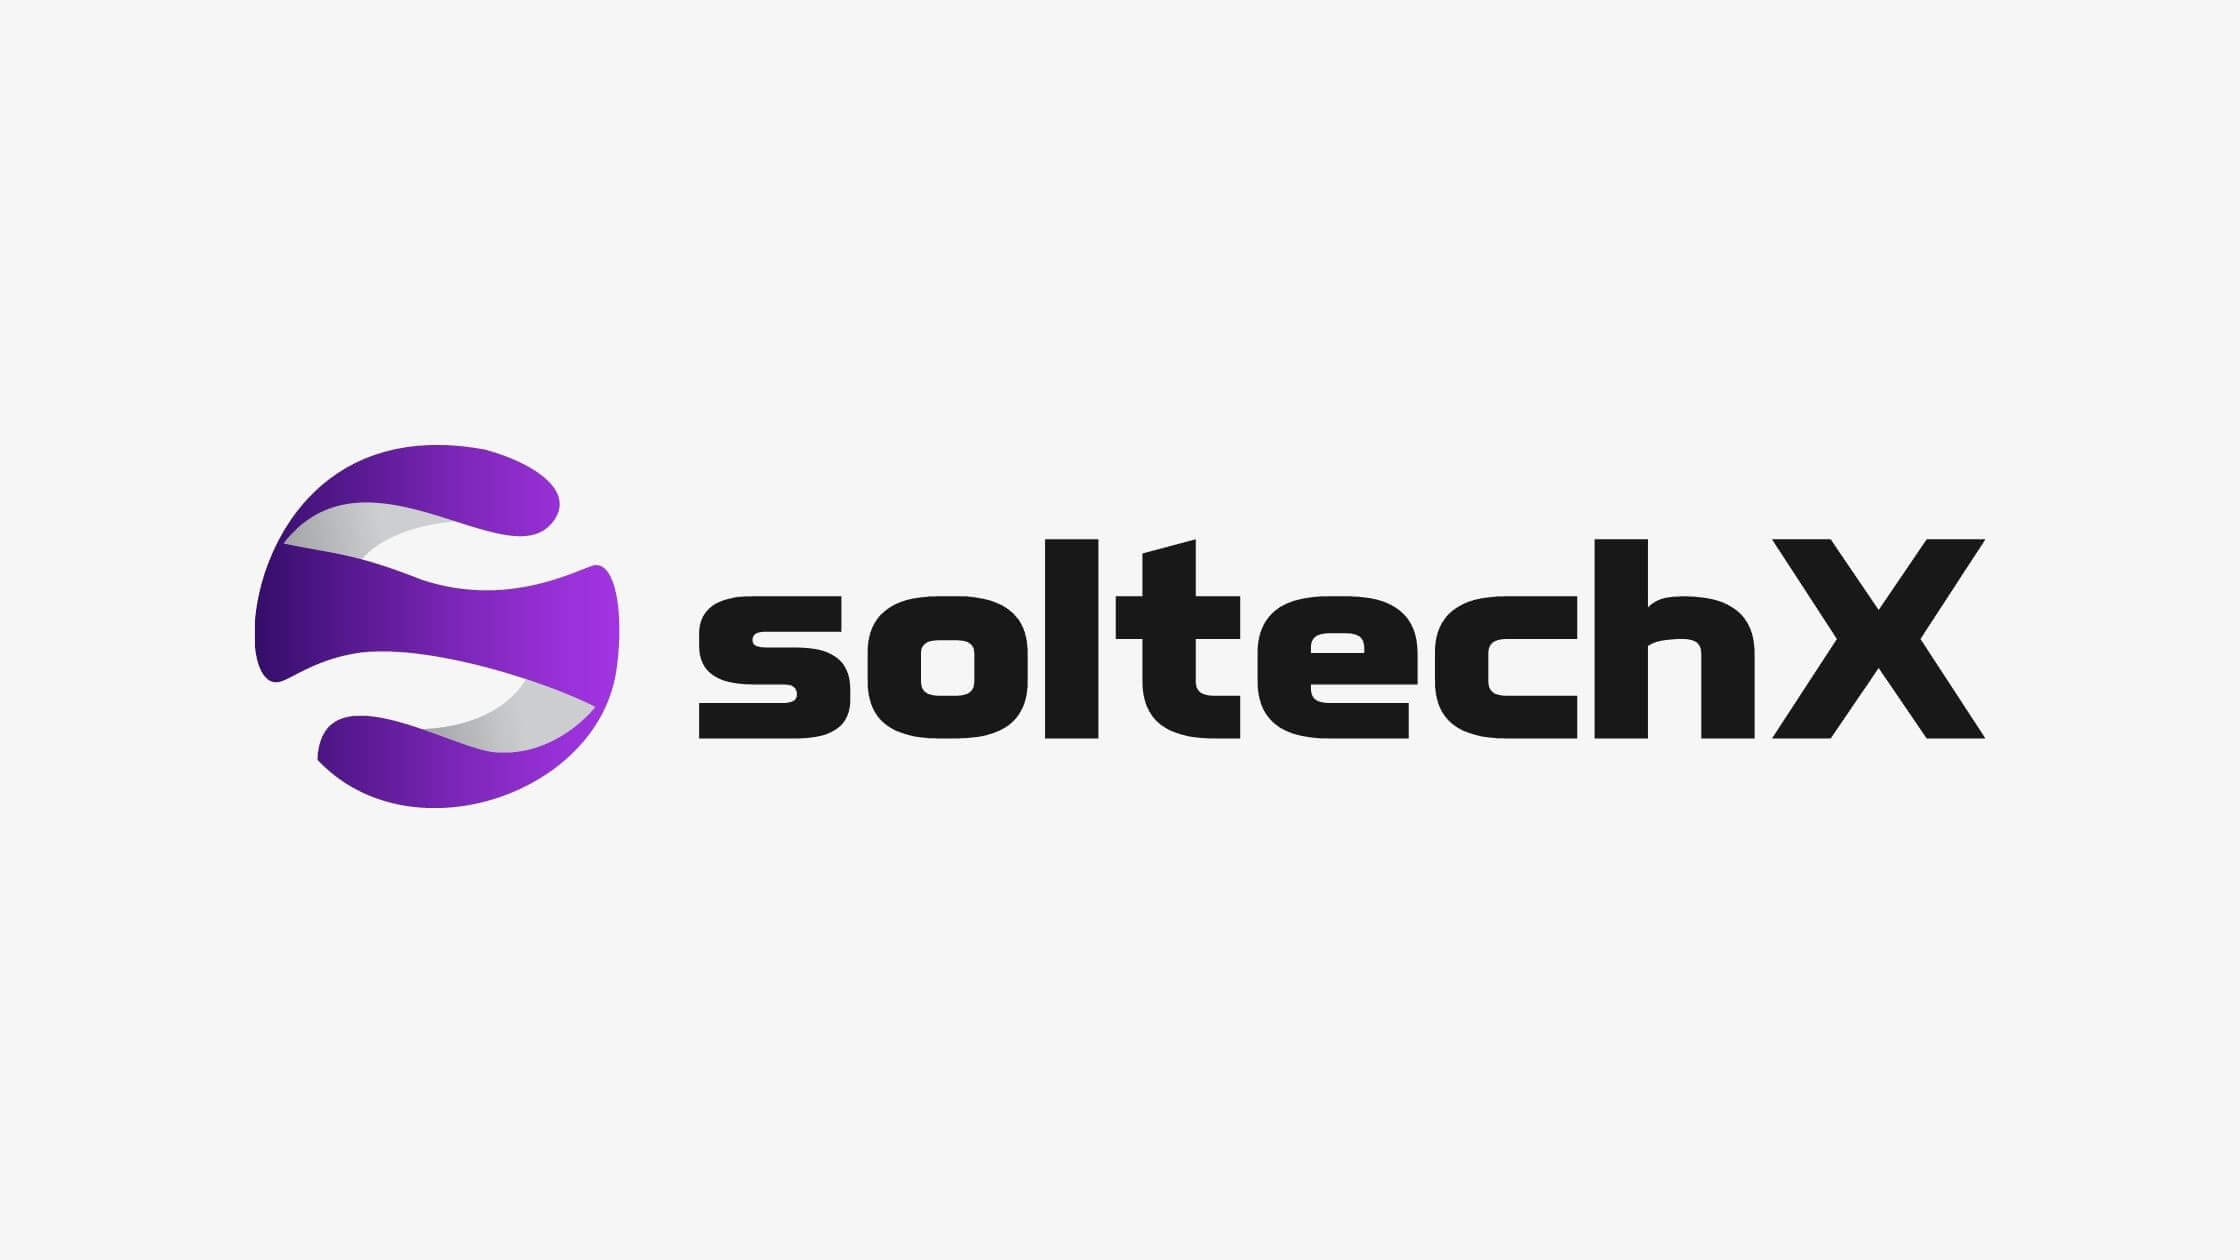 Soltechx